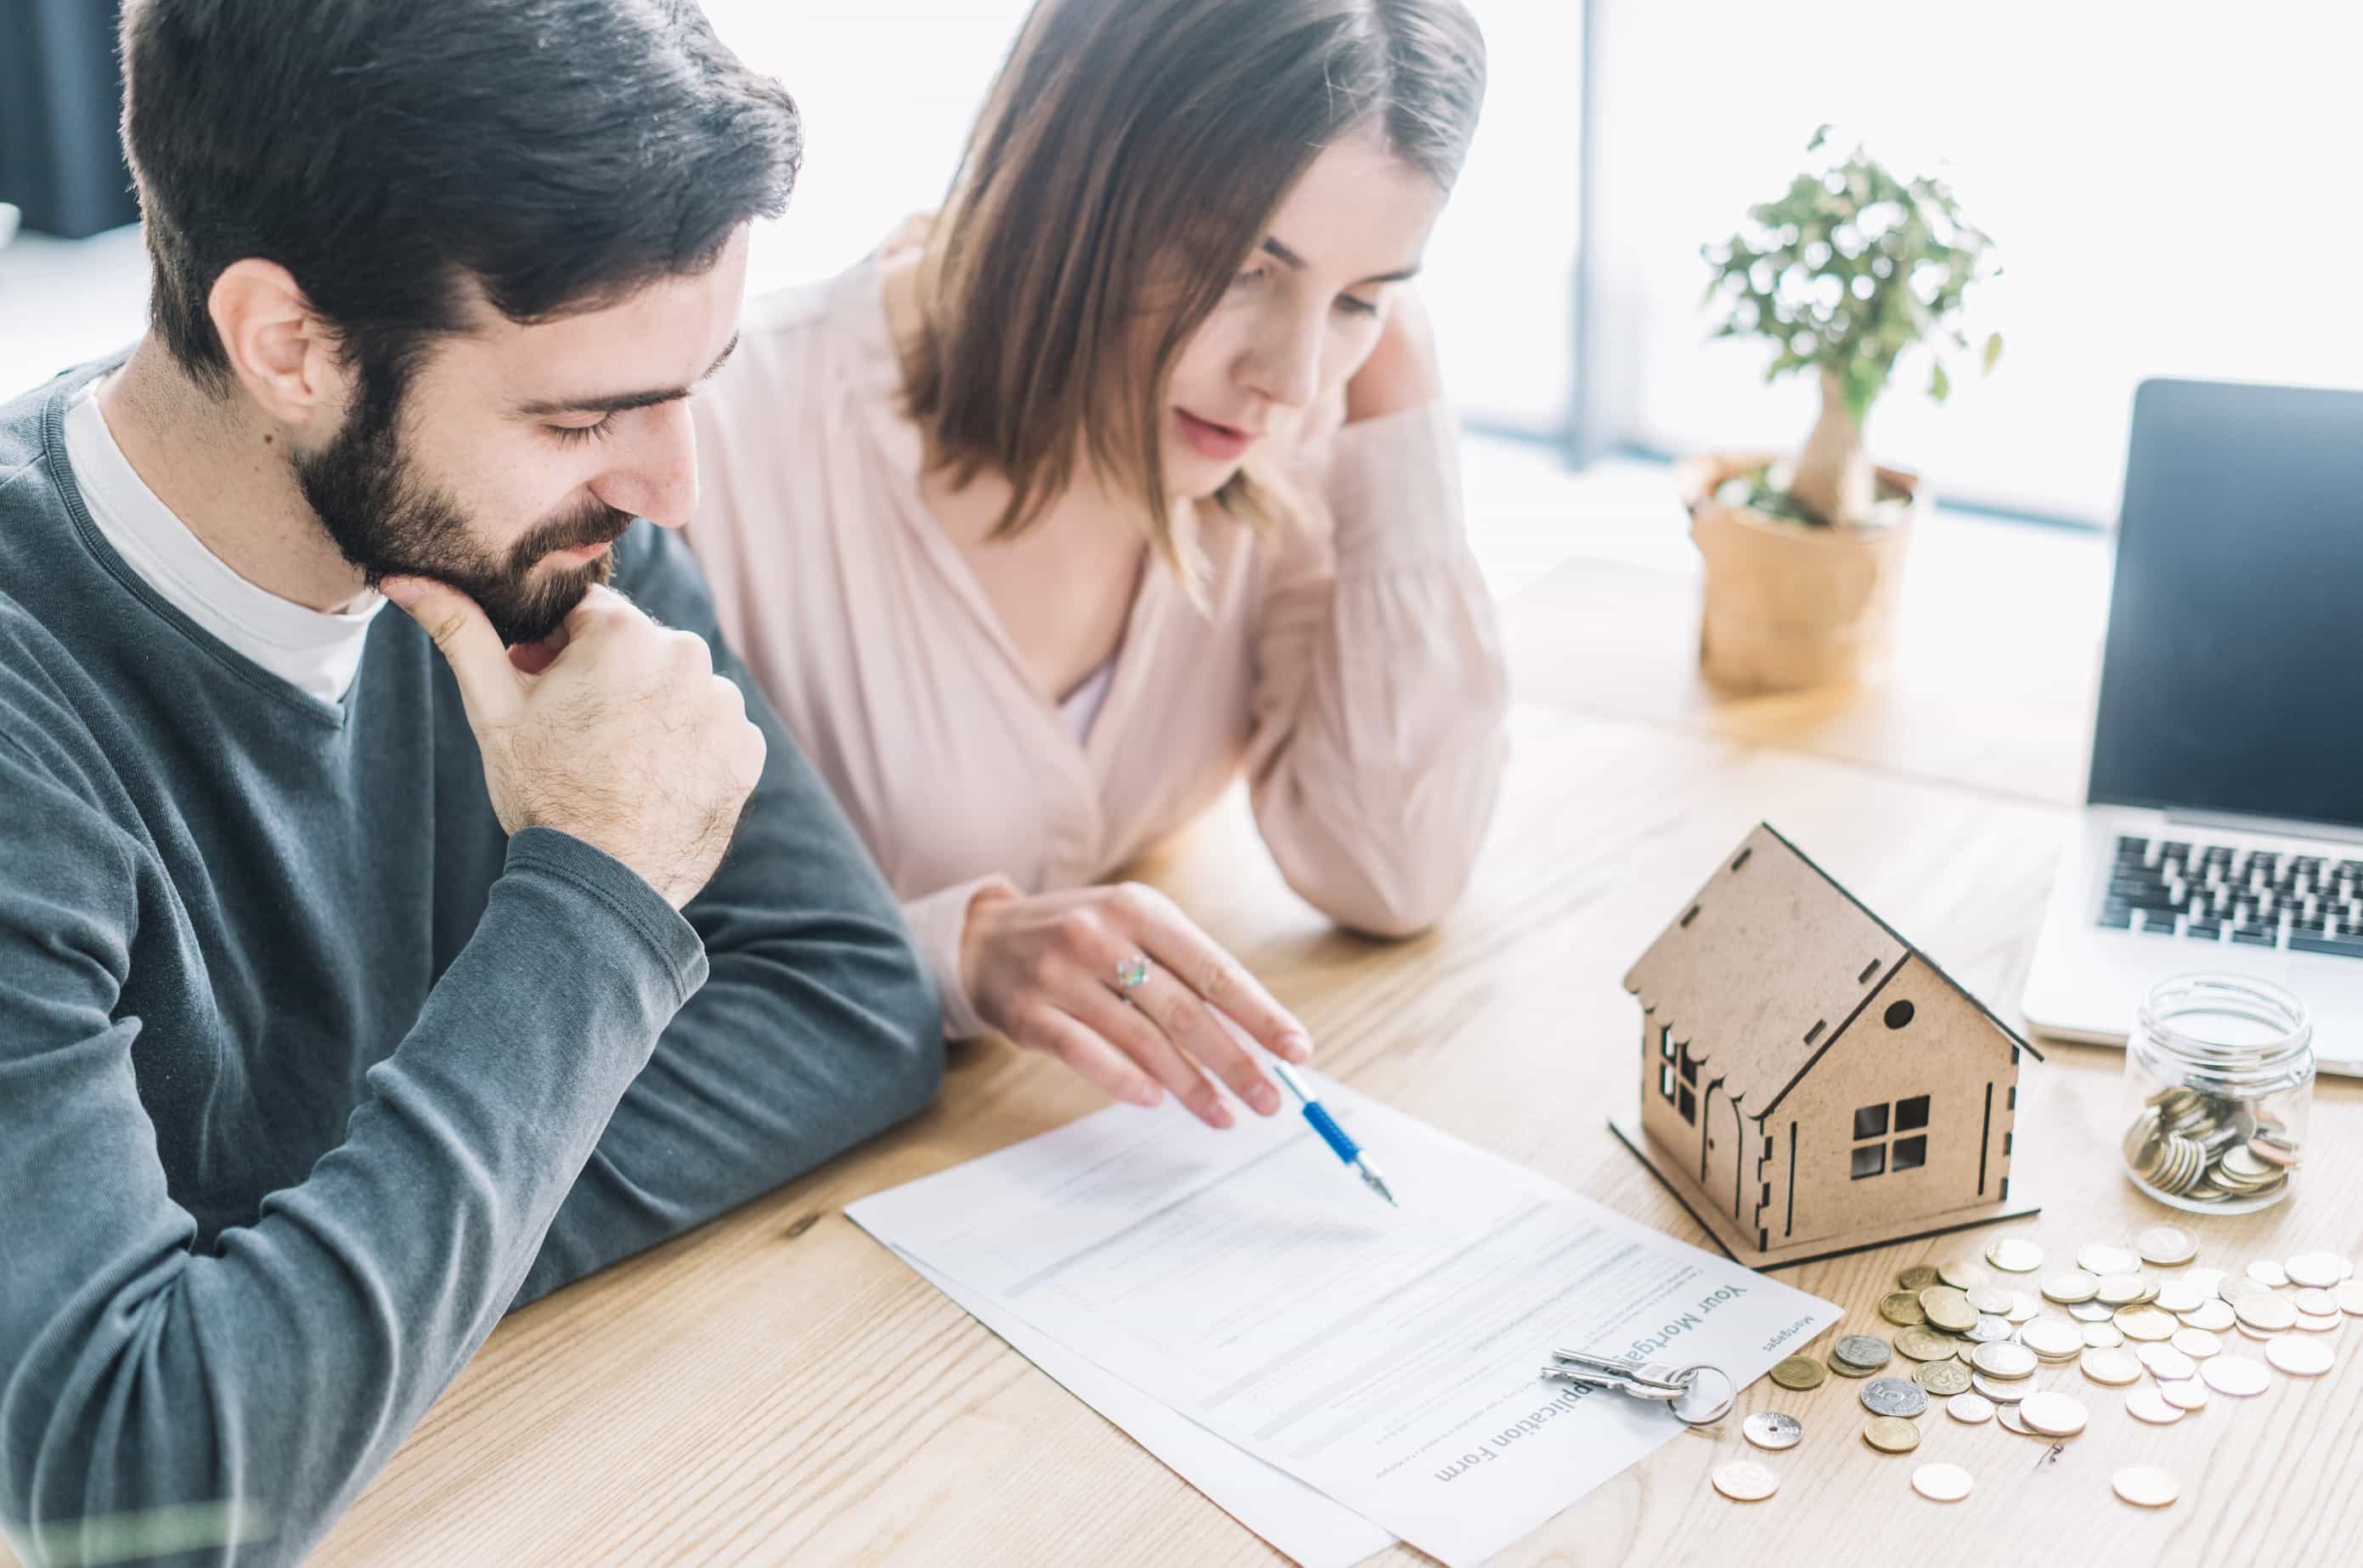 Welche Art von Hypothek soll ich whlen? Variabel, fest oder gemischt